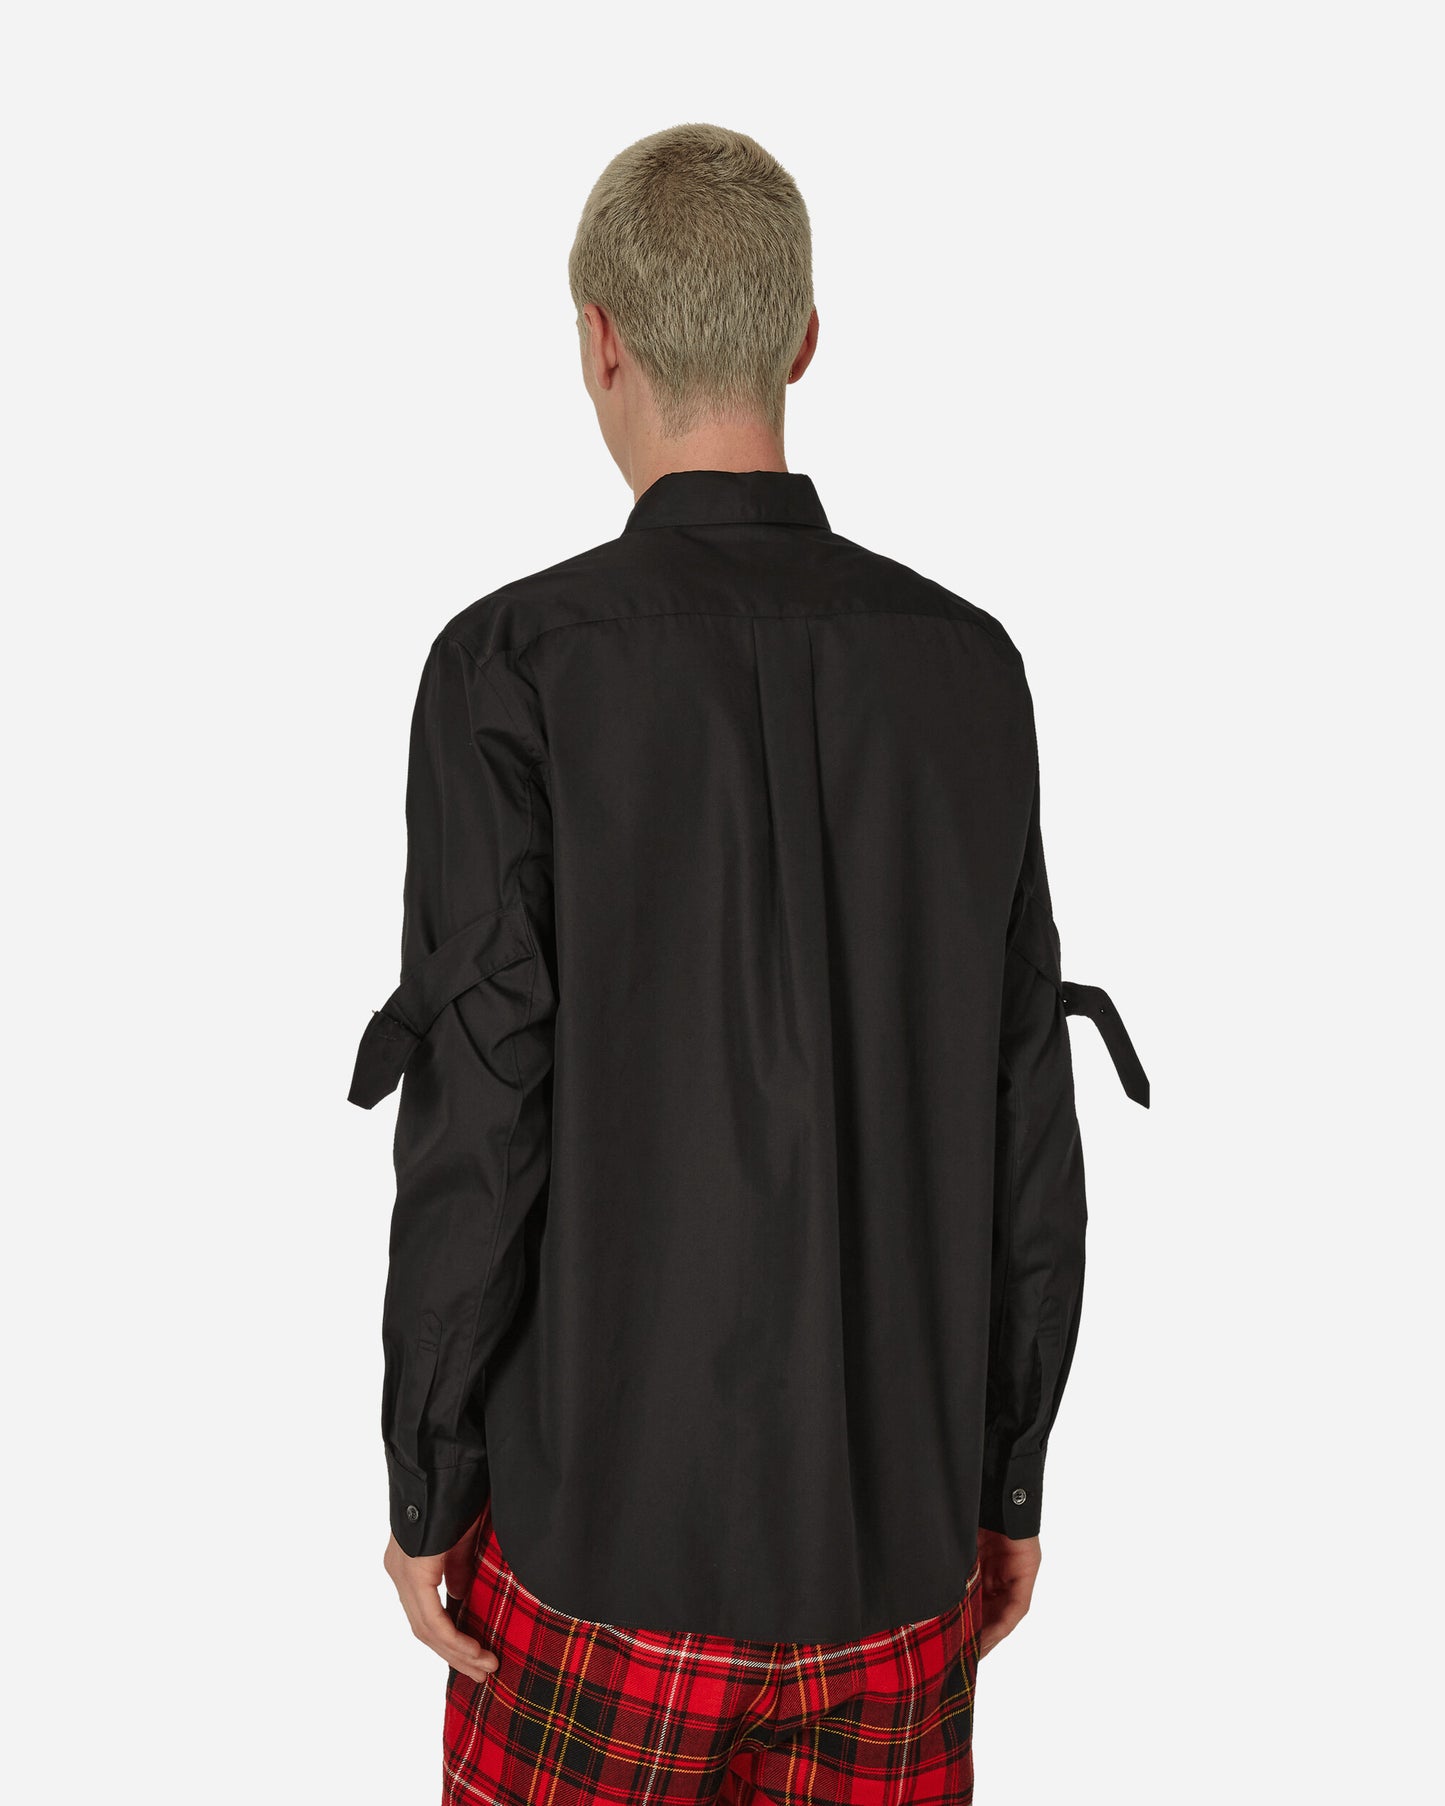 Comme Des Garçons Black Blouse Black Coats and Jackets Jackets 1L-B007-W23 1